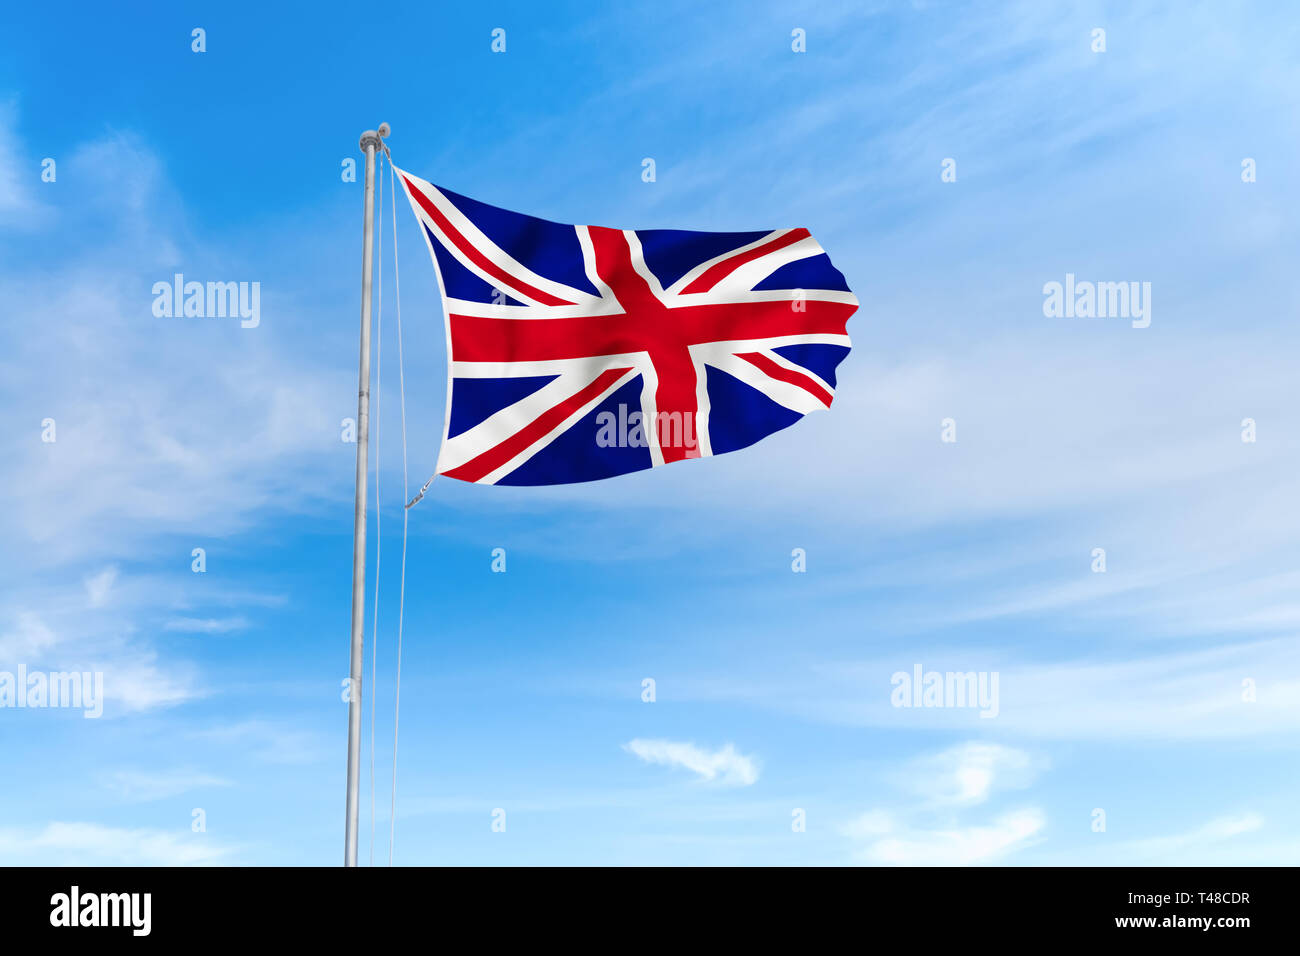 Regno Unito di Gran Bretagna e Irlanda del Nord bandiera al vento oltre il bel cielo blu sullo sfondo Foto Stock